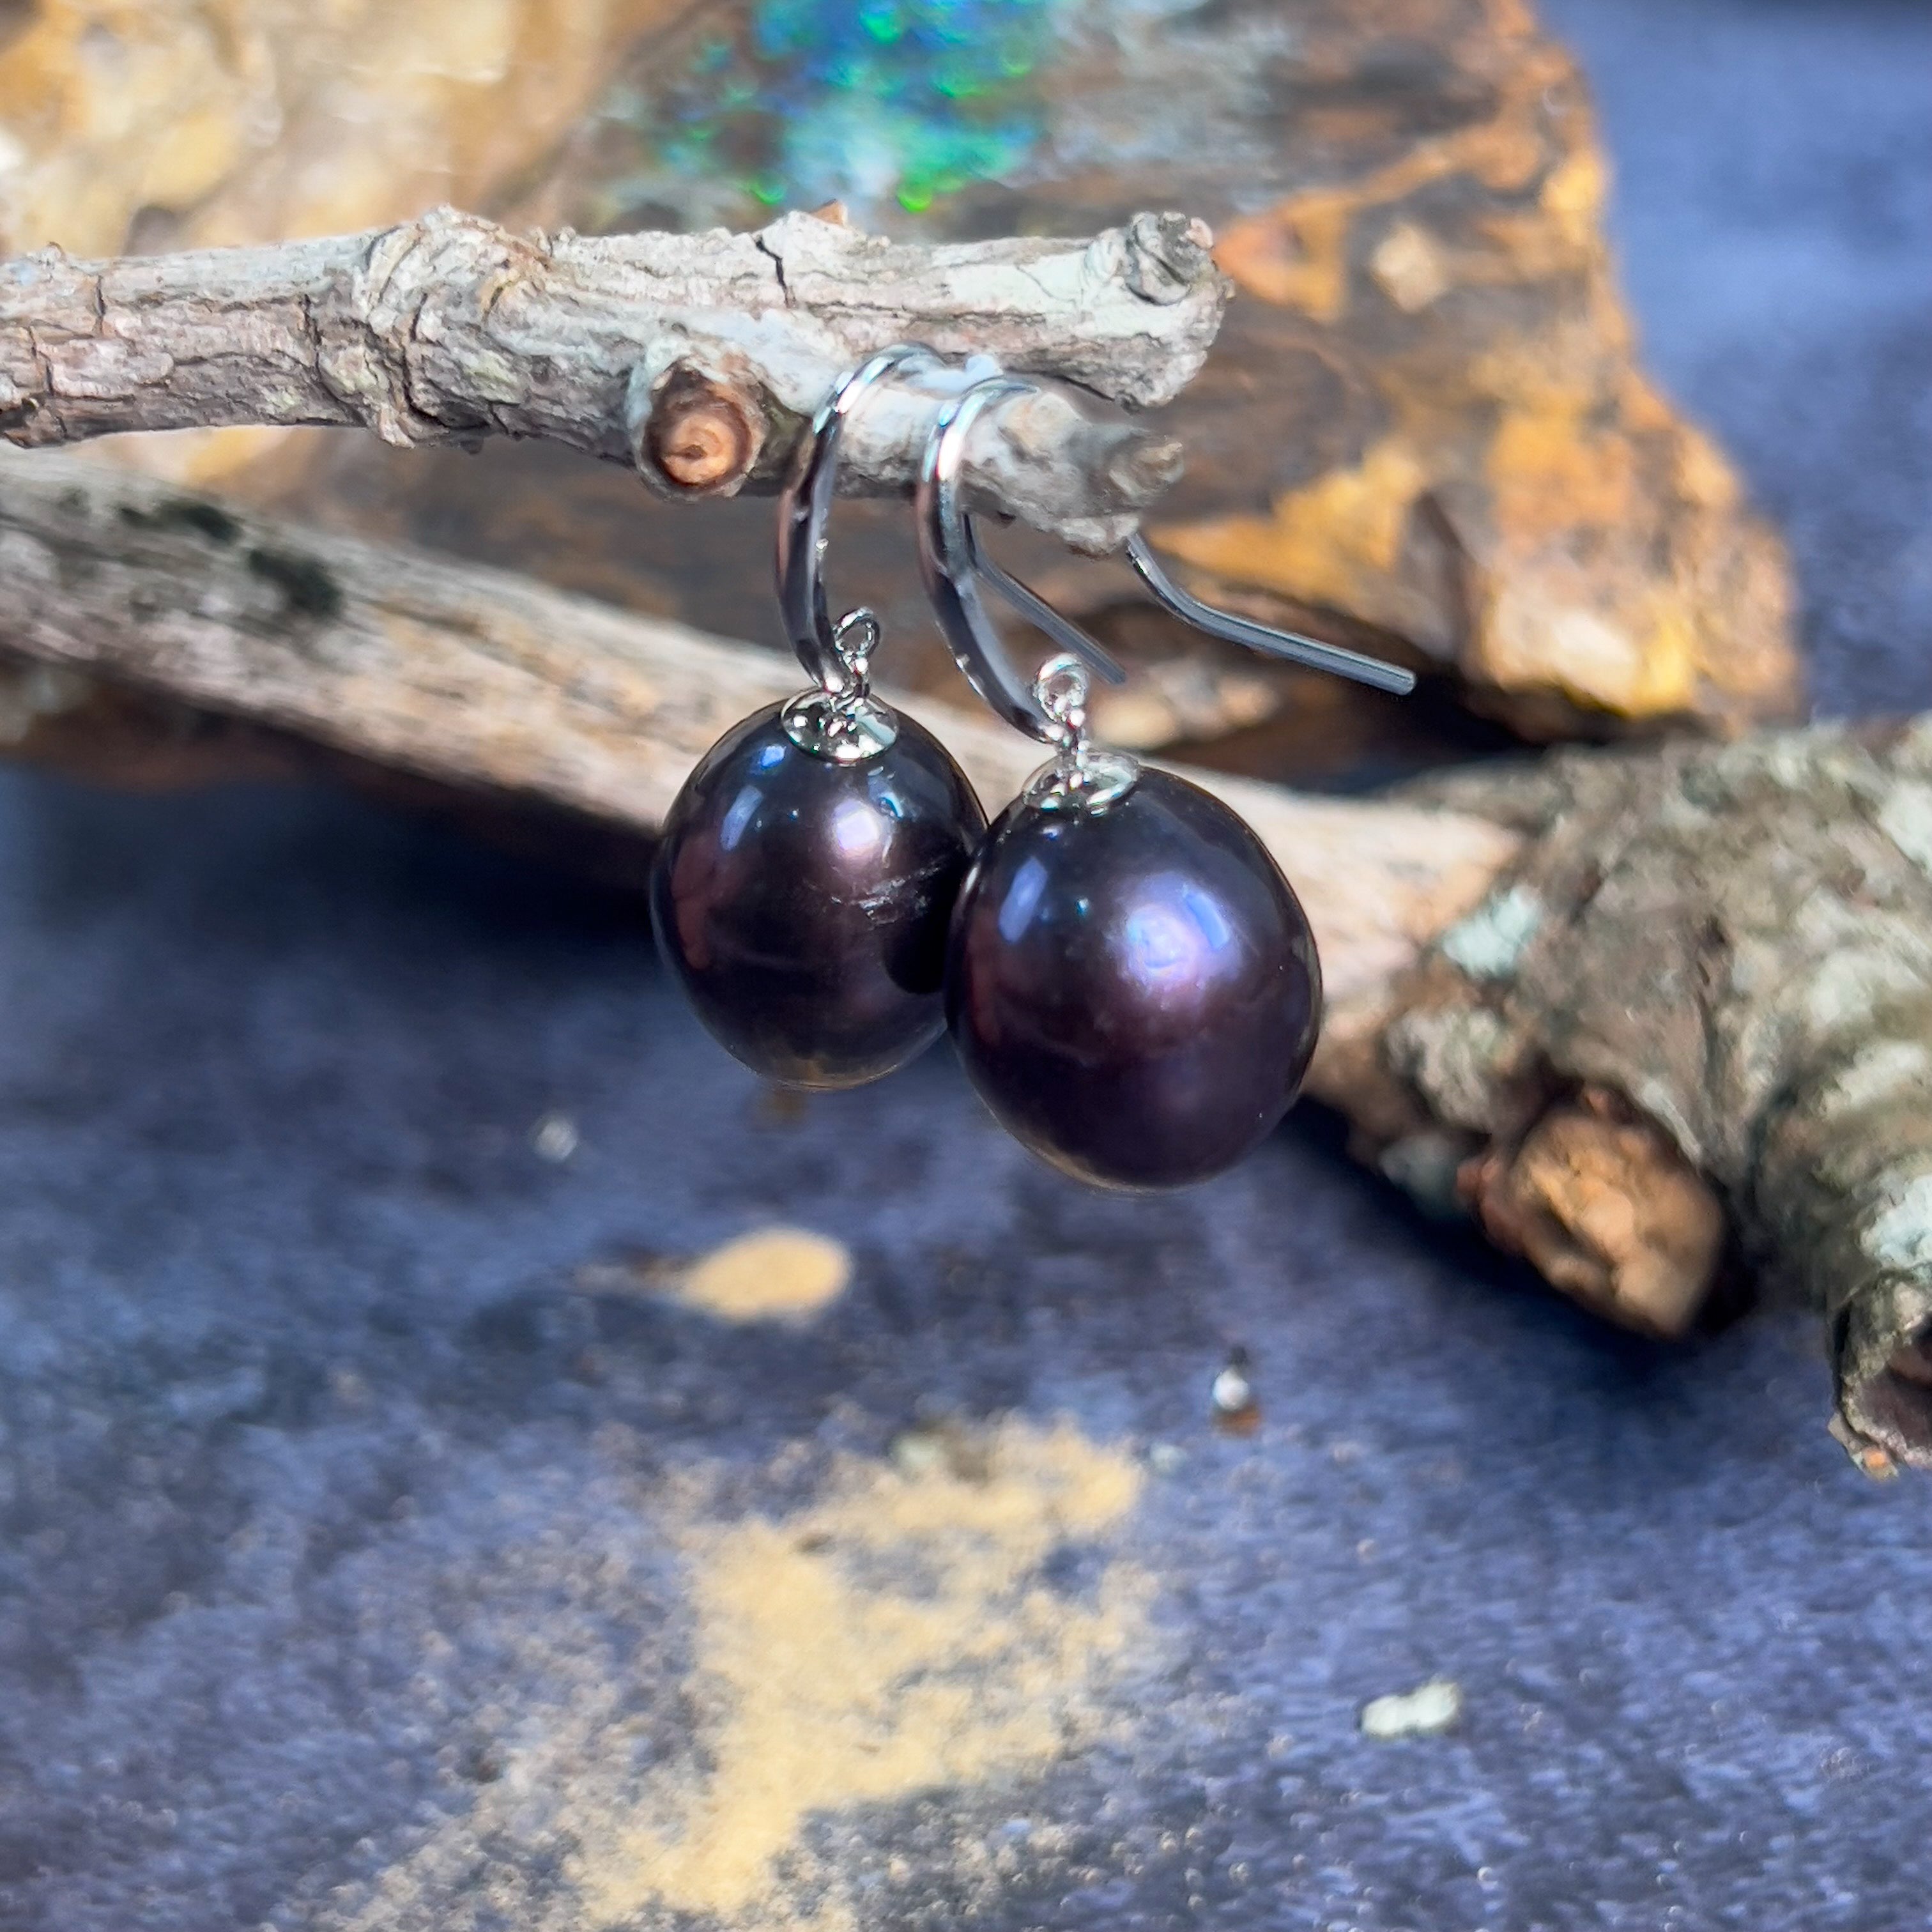 Sterling Silver Hook earrings with Black Pearls drop shape - Masterpiece Jewellery Opal & Gems Sydney Australia | Online Shop